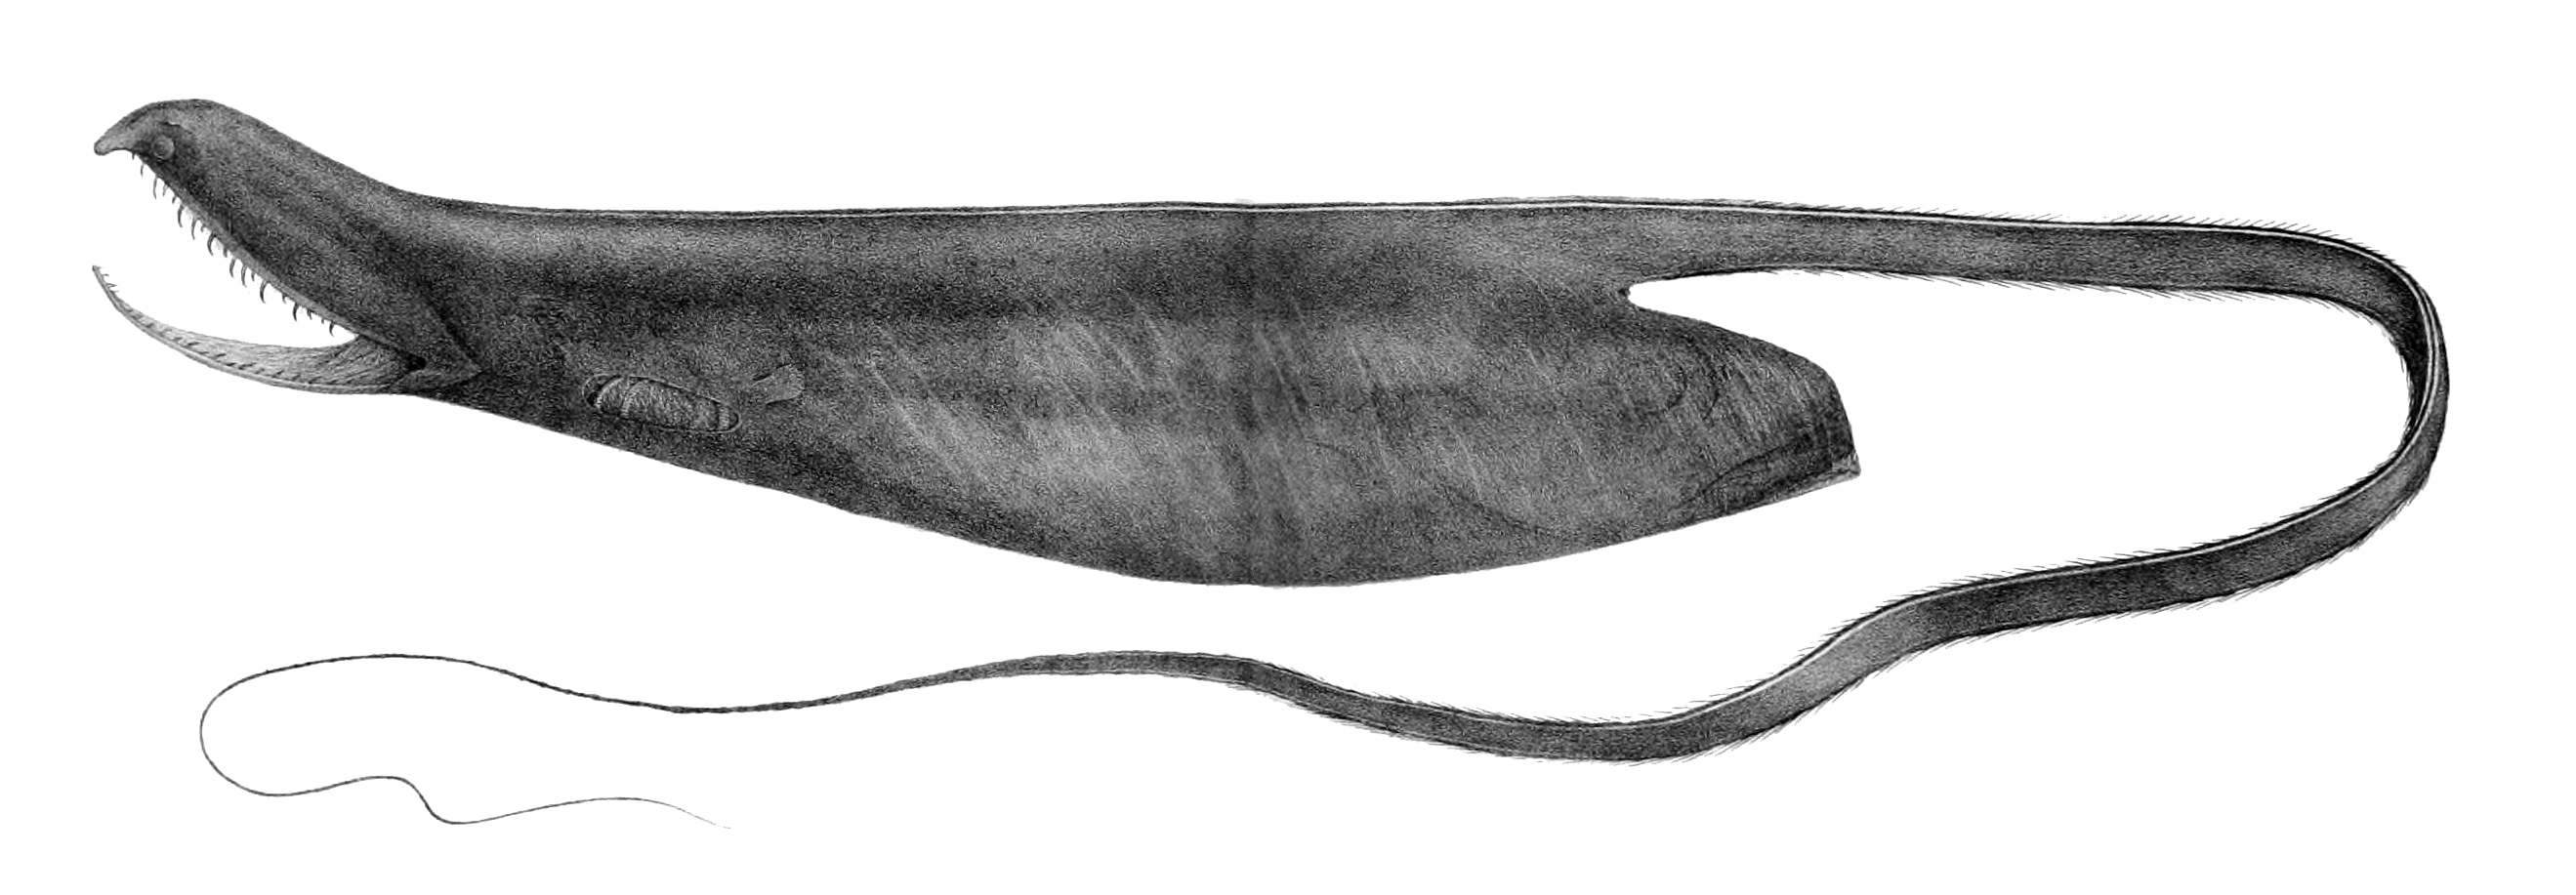 Image of Gulper Eel